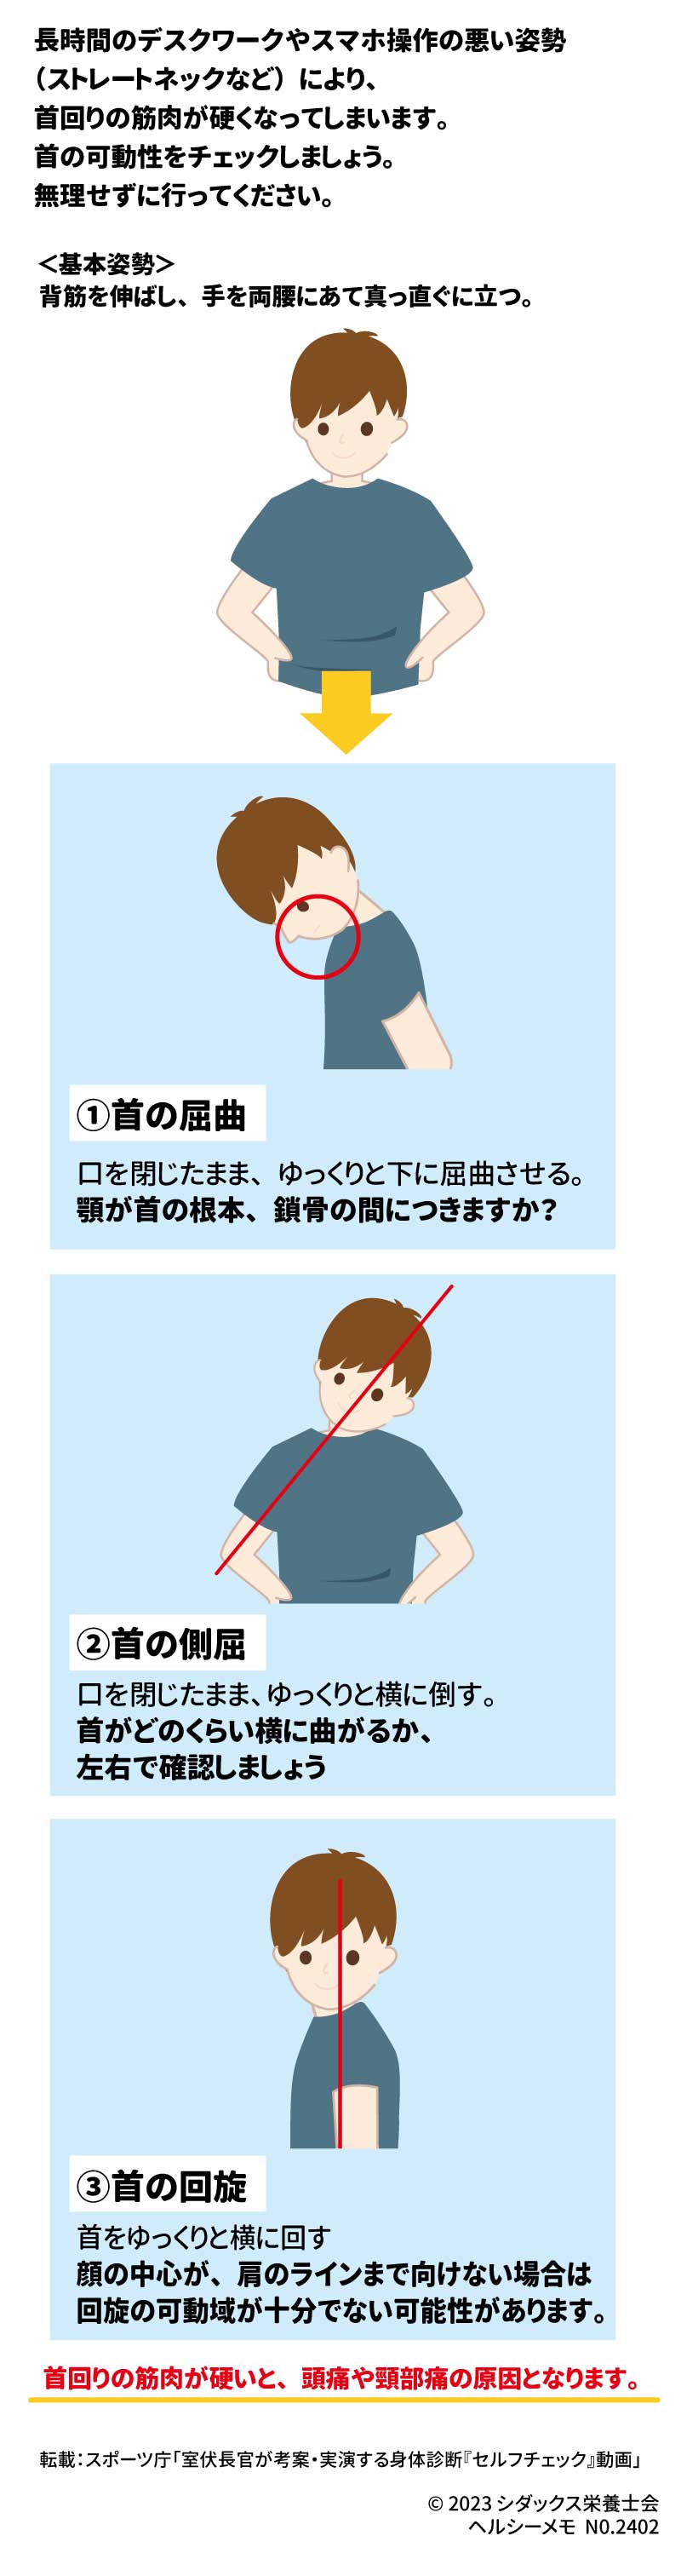 セルフチェック！首の可動性 長時間のデスクワークやスマホ操作の悪い姿勢（ストレートネックなど）により、首回りの筋肉が硬くなってしまいます。首の可動性をチェックしましょう。無理せずに行ってください。 ＜基本姿勢＞ 背筋を伸ばし、手を両腰にあて真っ直ぐに立つ。 ①	首の屈曲：口を閉じたまま、ゆっくりと下に屈曲させる。 顎が首の根本、鎖骨の間につきますか？ ②首の側屈：口を閉じたまま、ゆっくりと横に倒す。 首がどのくらい横に曲がるか、左右で確認しましょう ③首の回旋：首をゆっくりと横に回す。 顔の中心が、肩のラインまで向けない場合は回旋の可動域が十分でない可能性があります。 首回りの筋肉が硬いと、頭痛や頸部痛の原因となります。